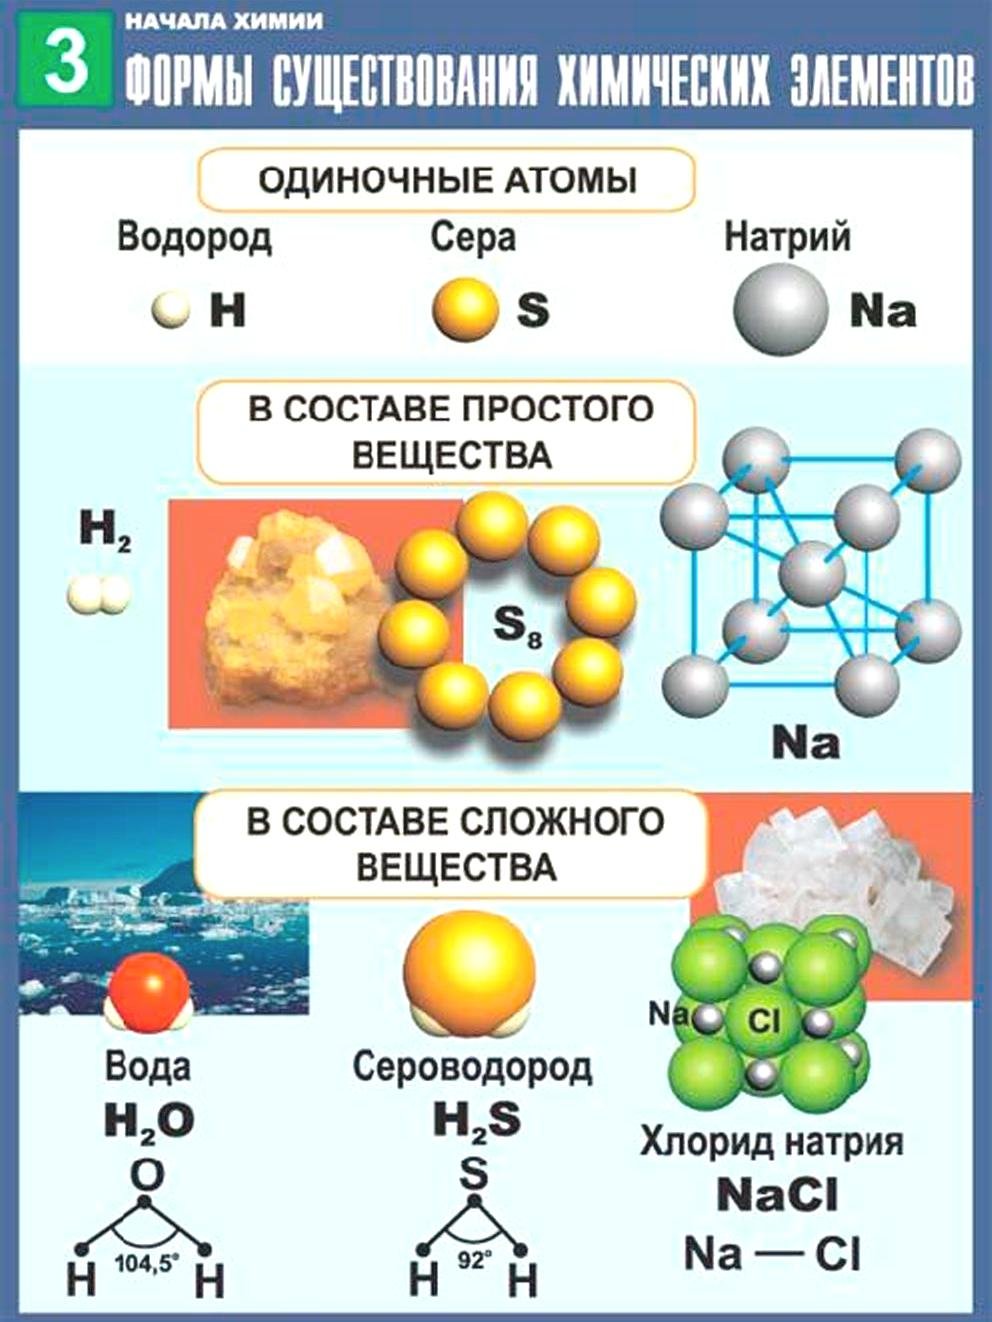 Сложные химические соединения состоят из. Простые сложные вещества хим элементов. Химические соединения простые и сложные вещества. Атомные молекулы химические элементы таблица. Формы существования хим элементов таблица.